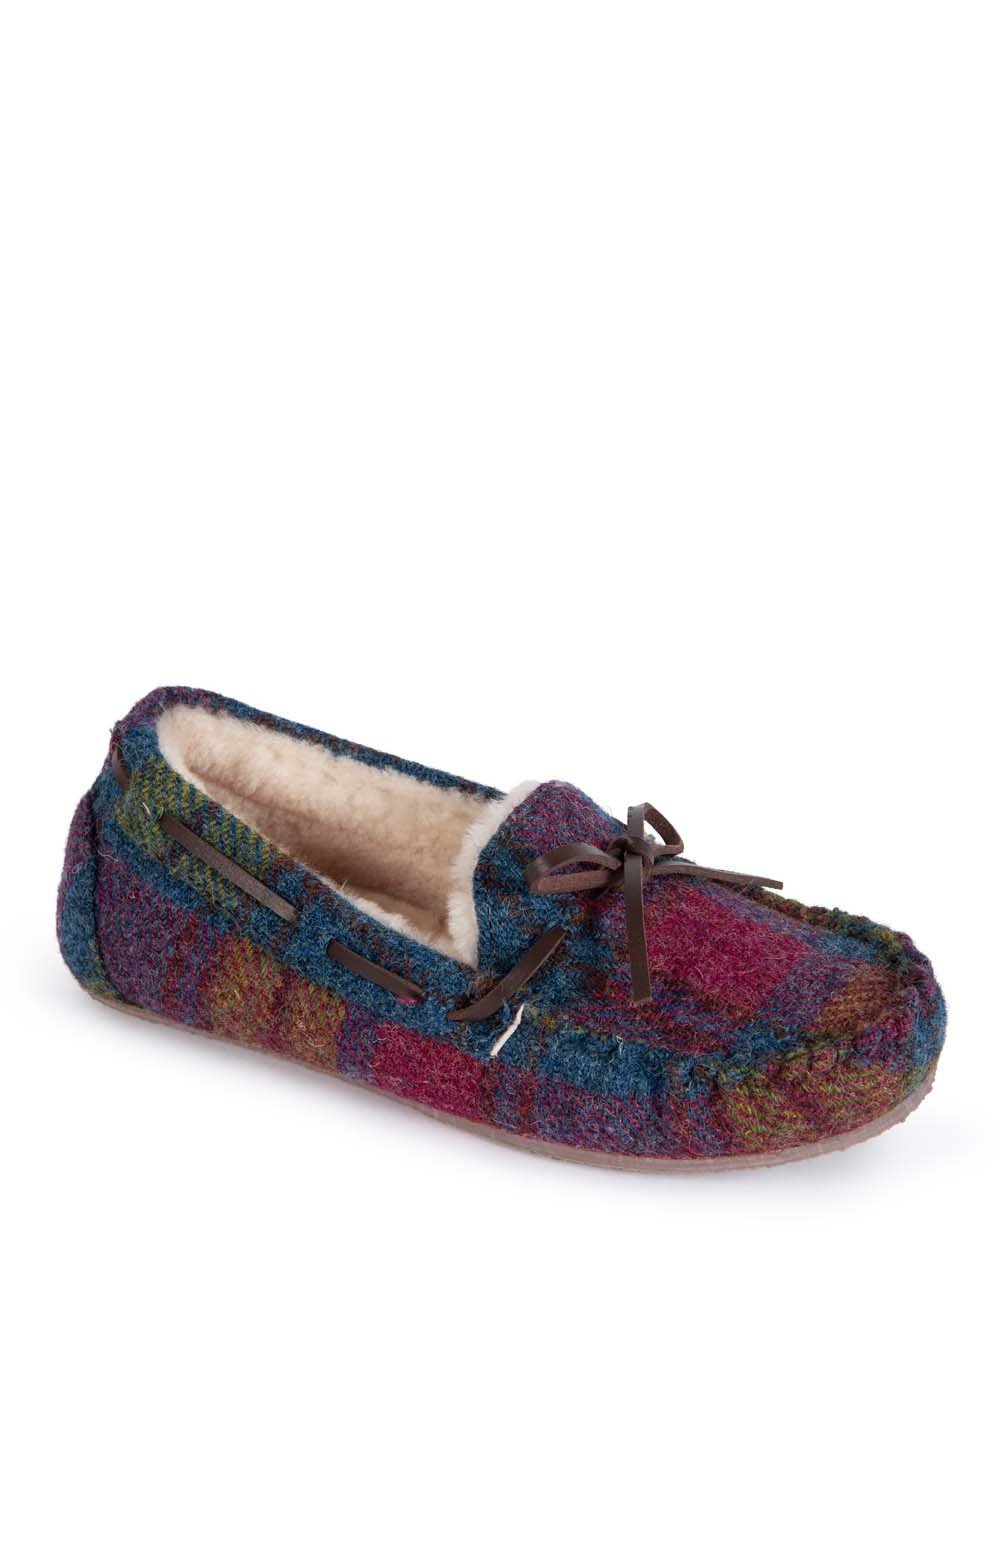 harris tweed moccasin slippers